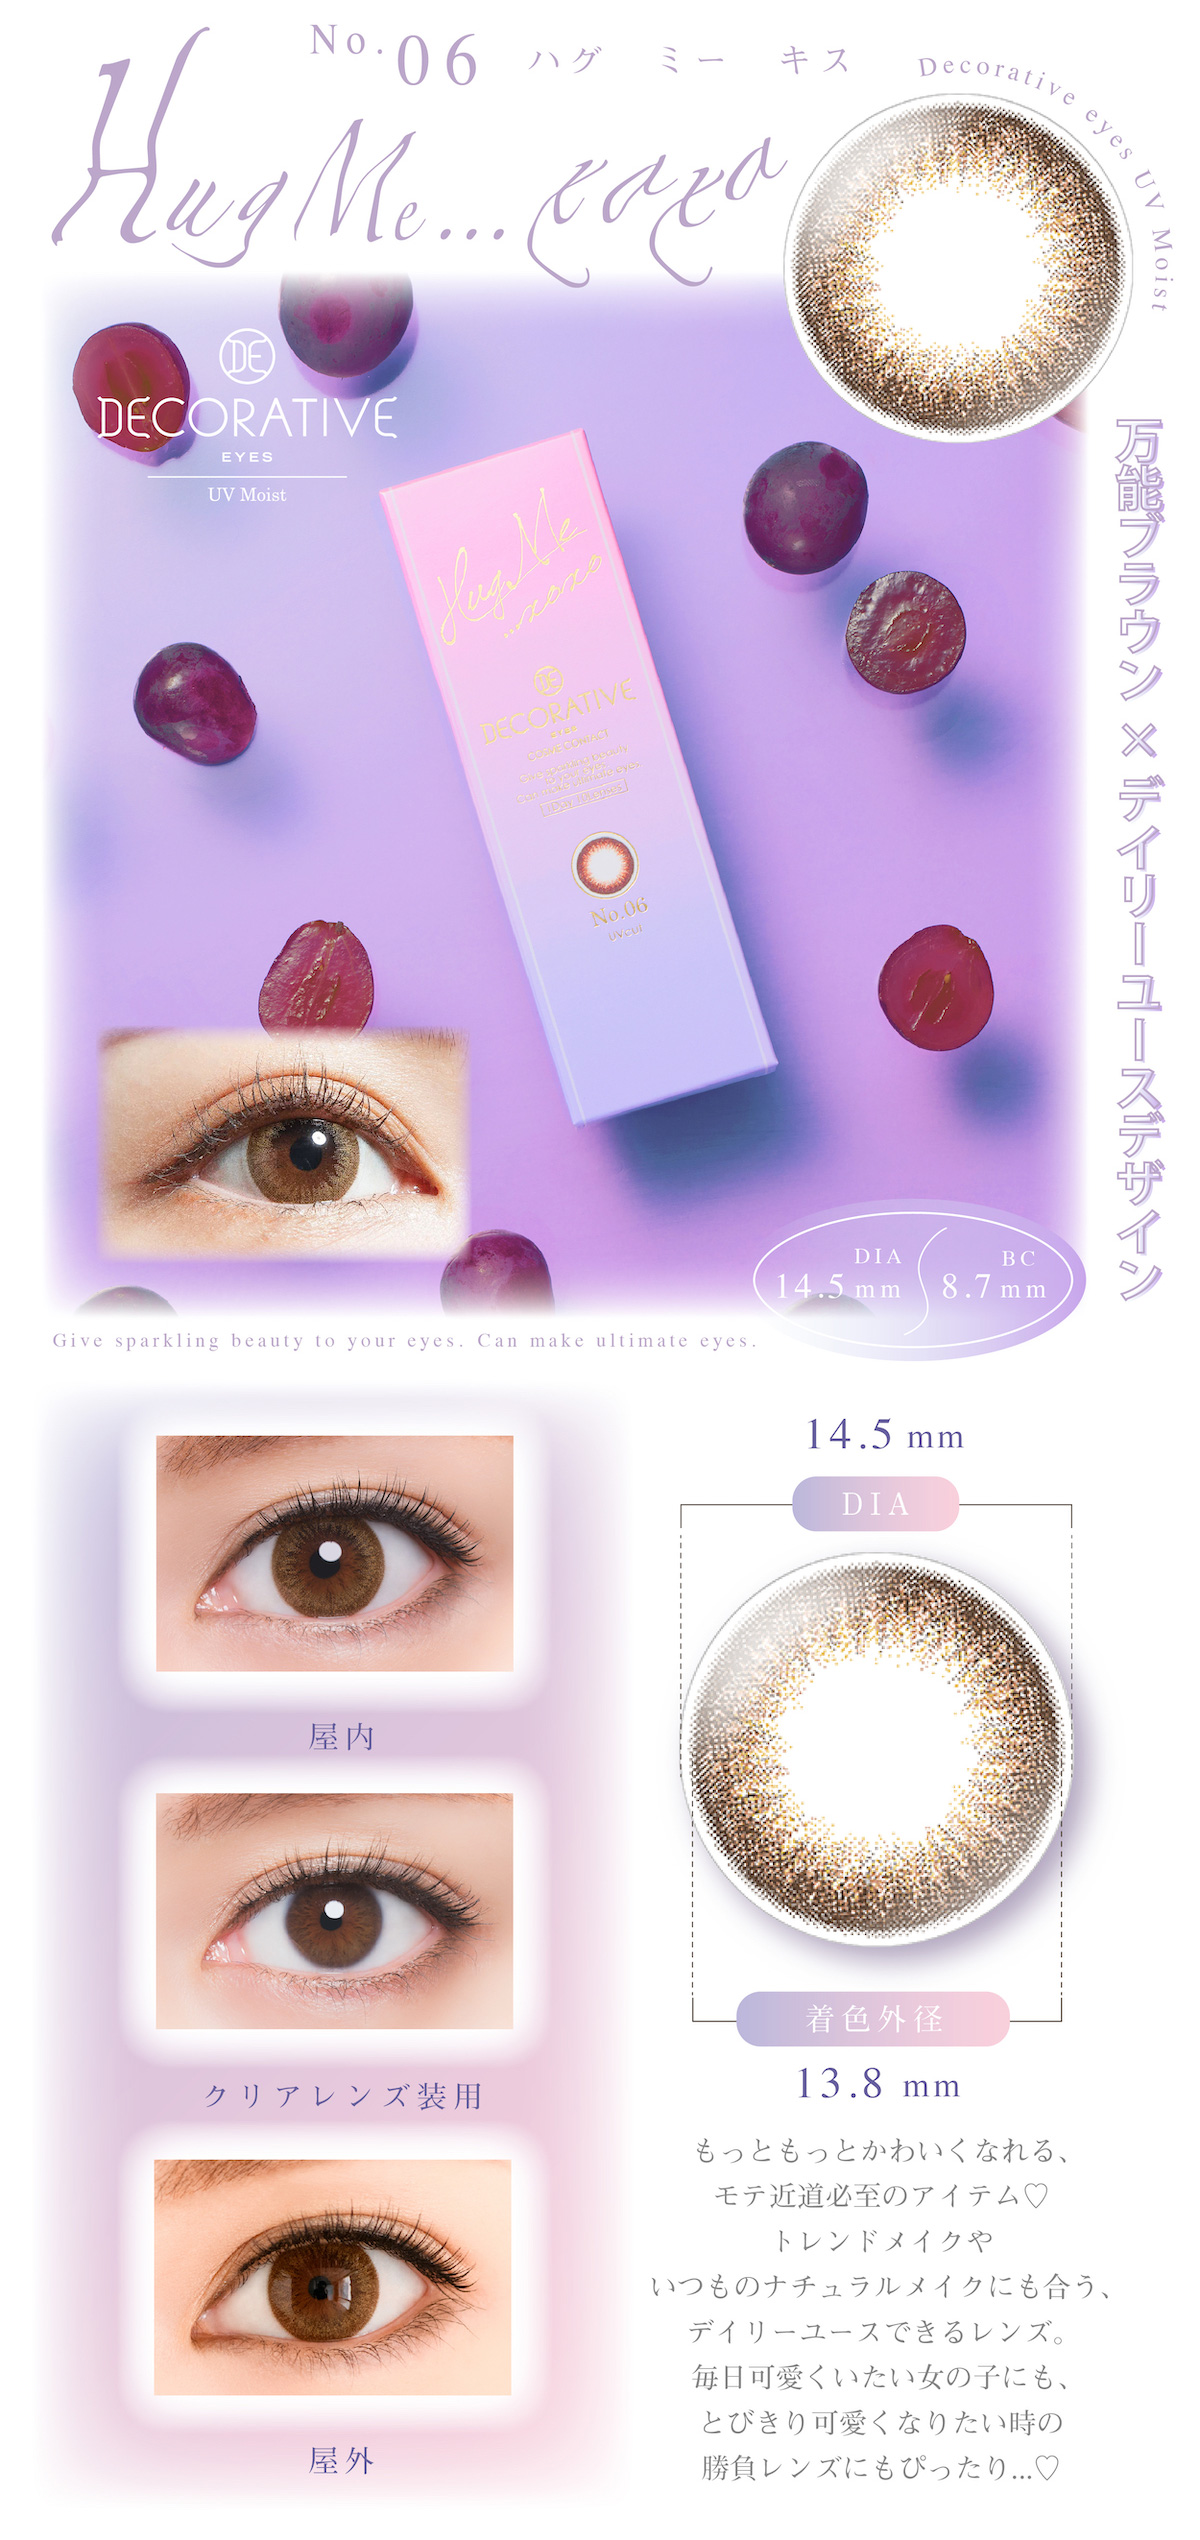 デコラティブアイズUVMが瞳にやさしく、かわいいひみつ　こなれ感のある3トーンカラー　UVカット成分で瞳を守る　うるおい感たっぷりレンズ サンドイッチ製法